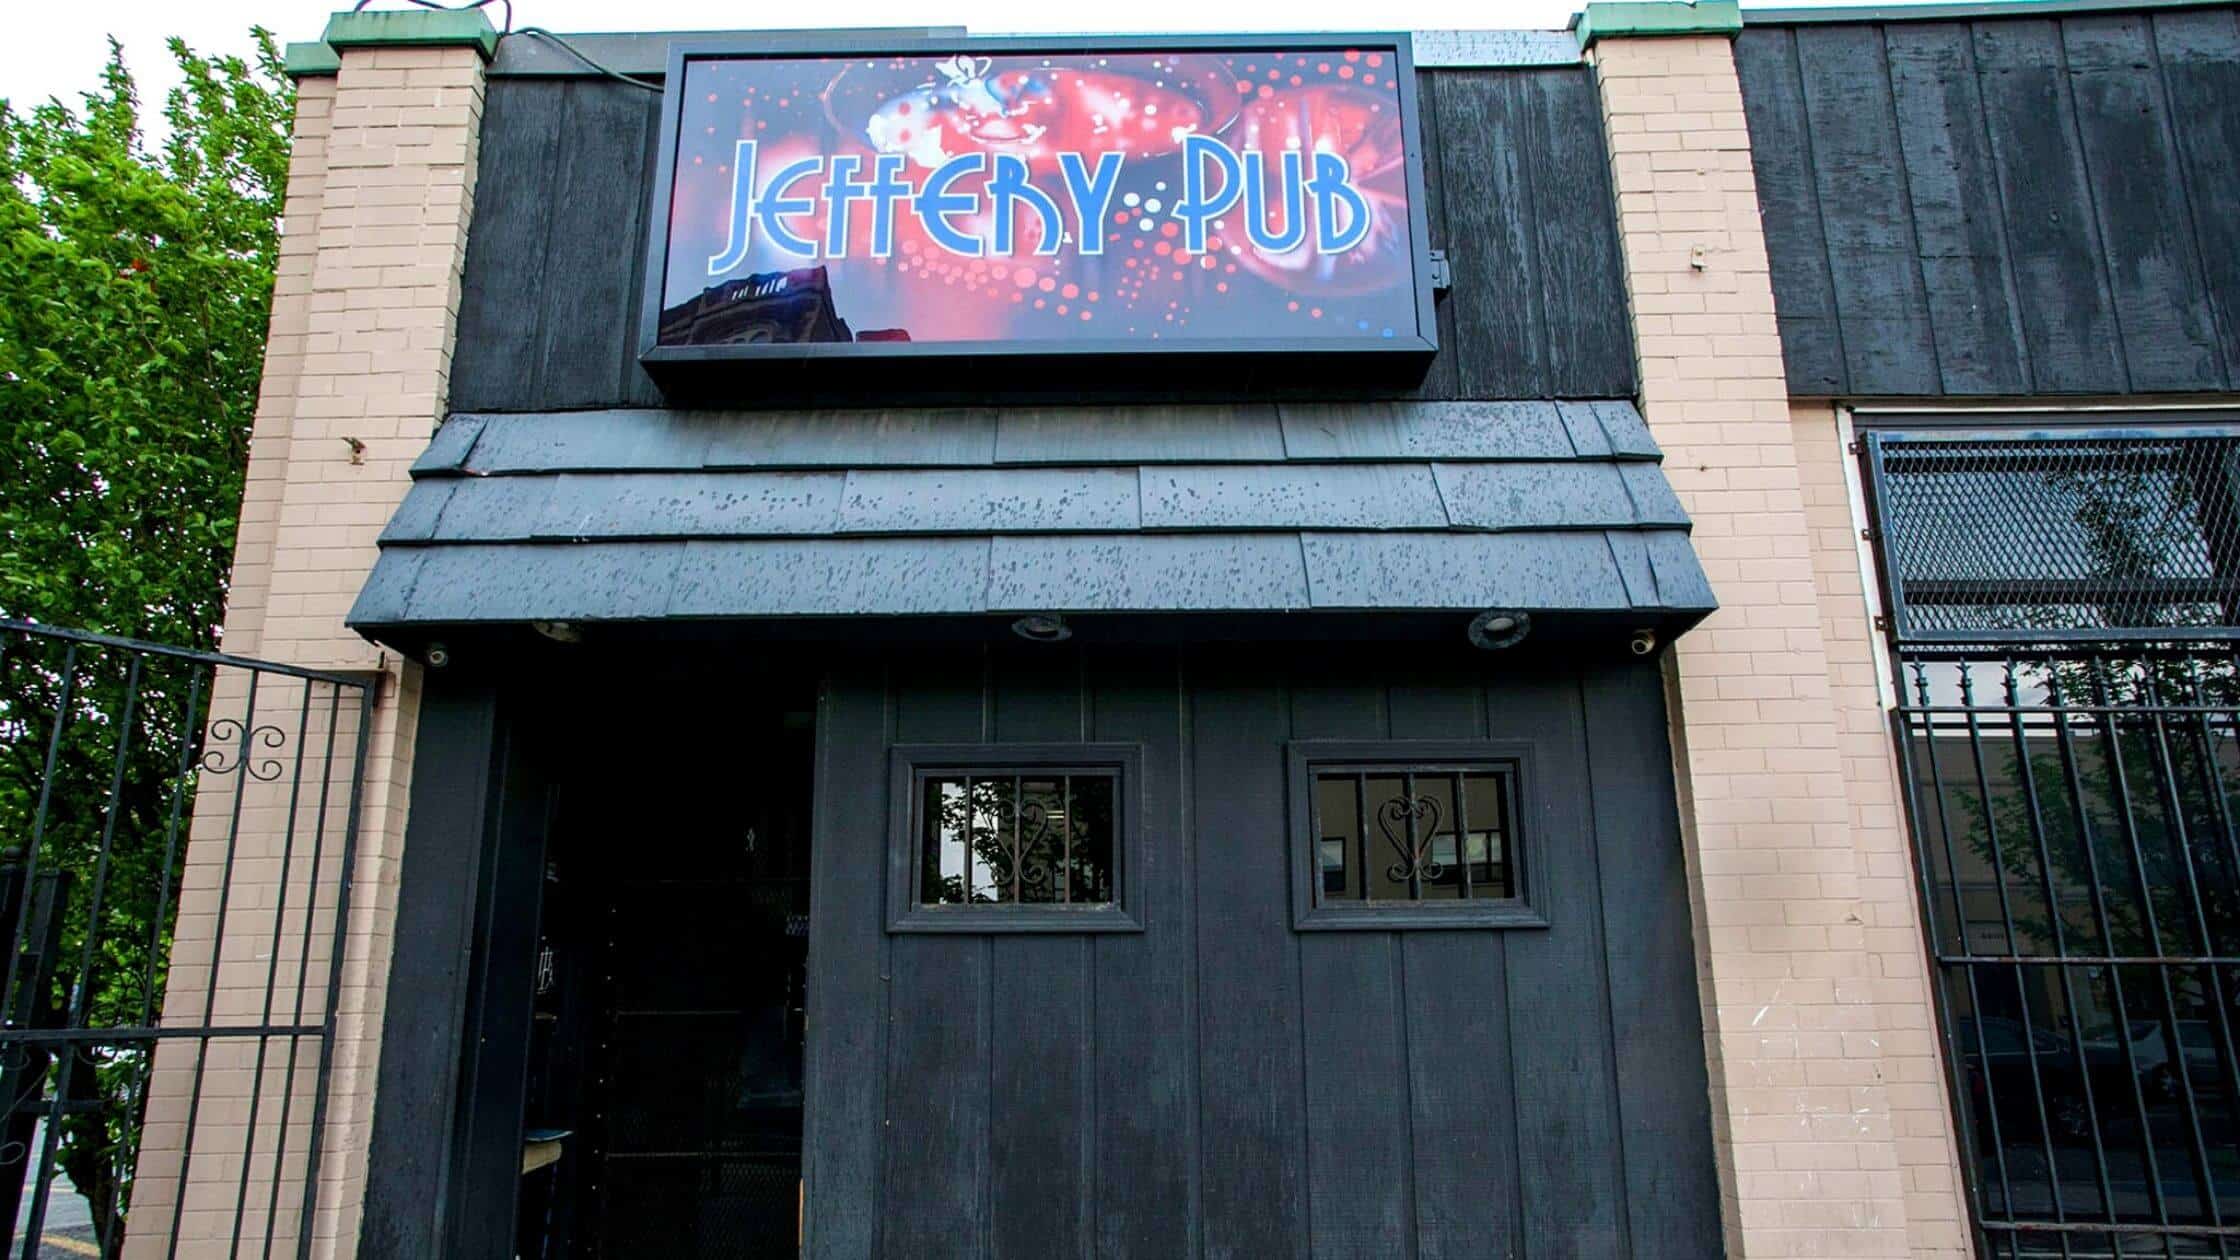 Jeffery Pub